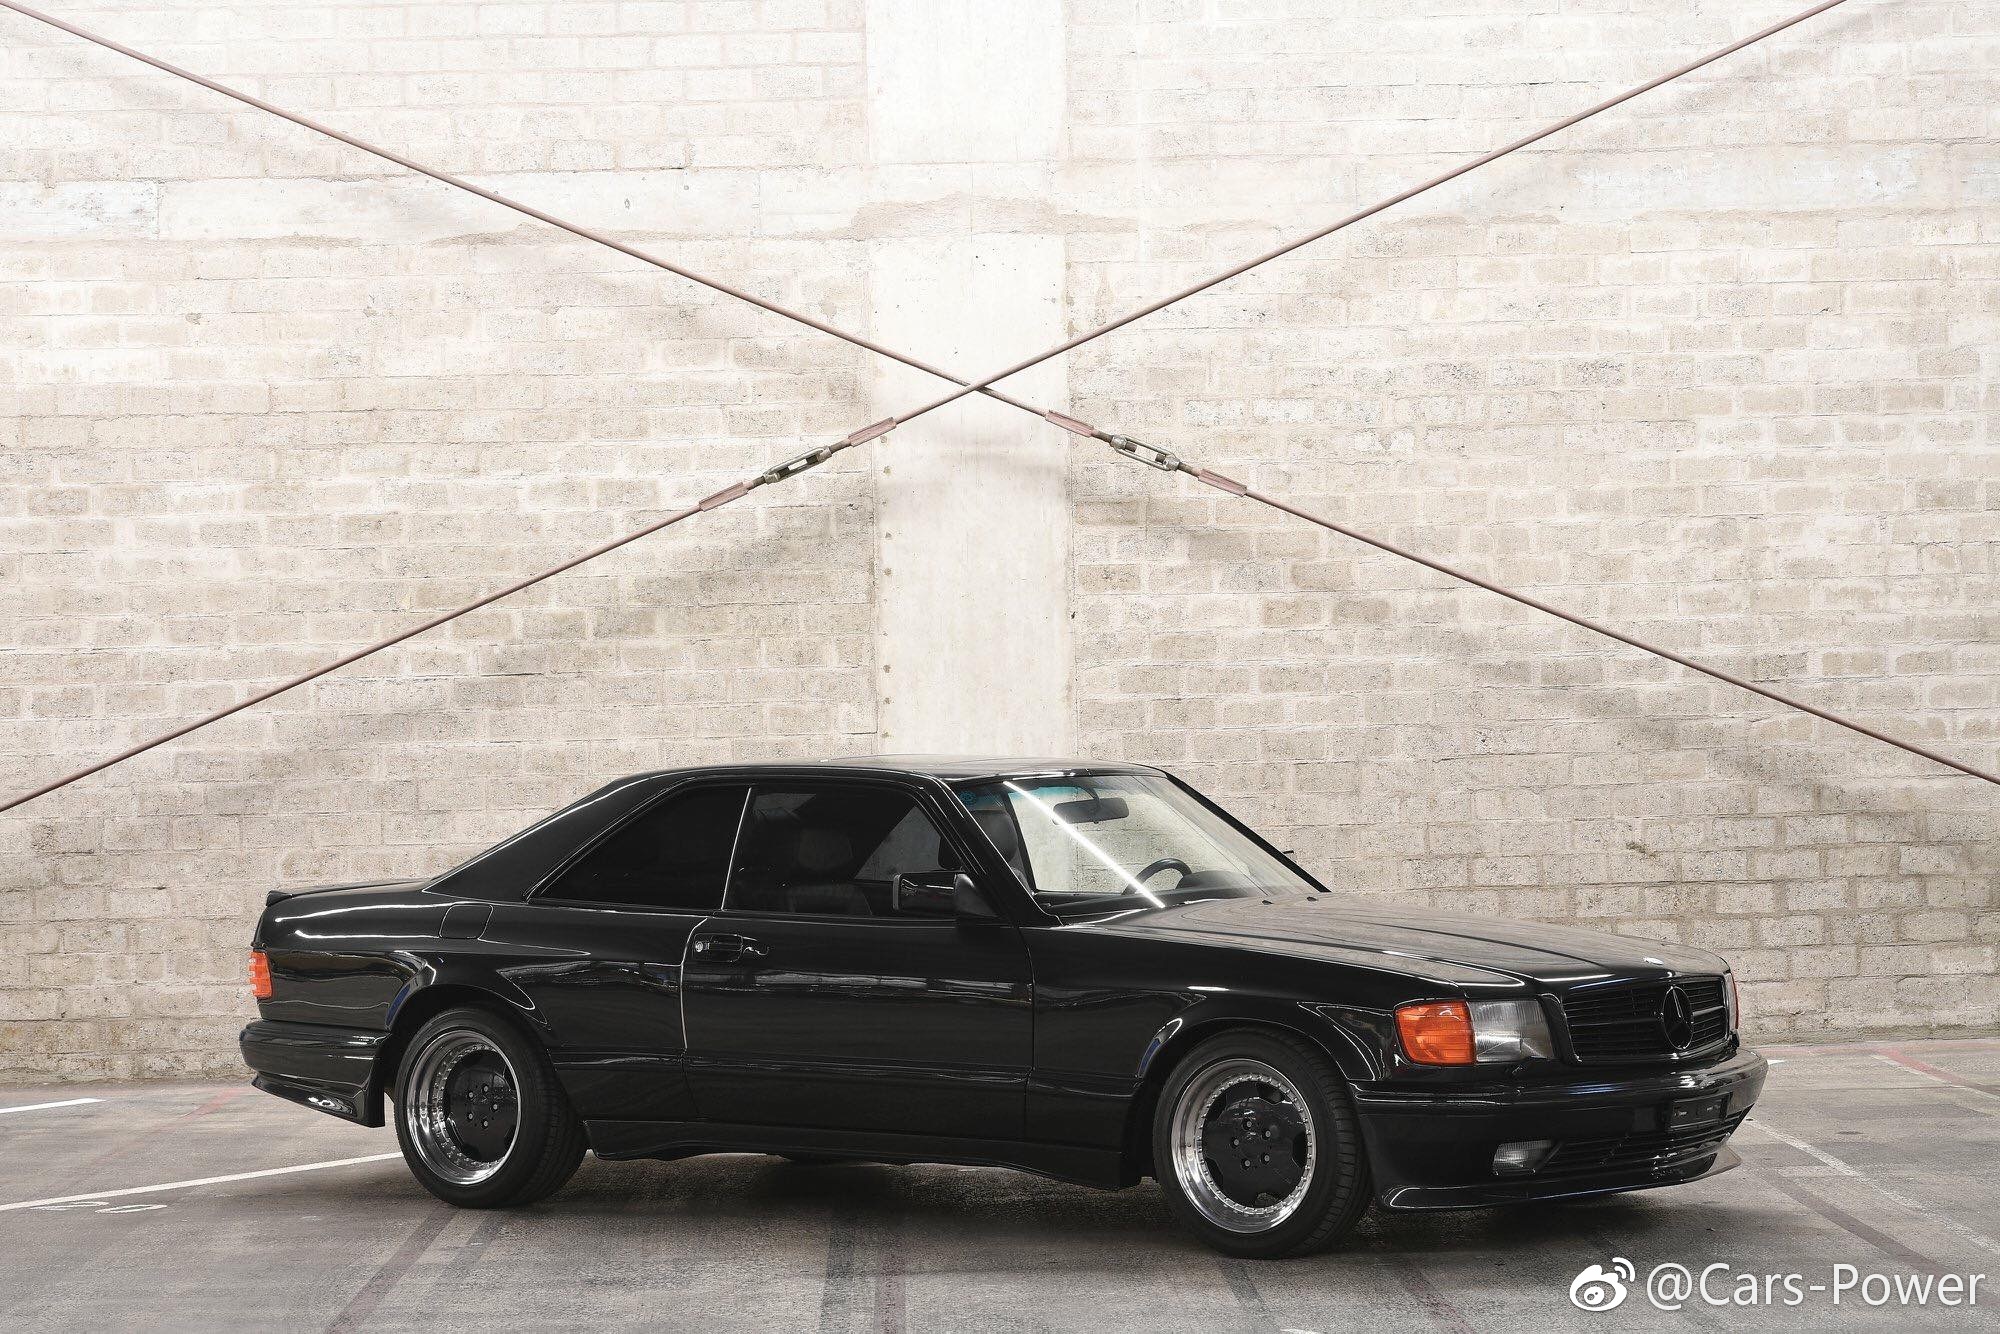 经典中古性能车小专辑致敬80 90年代 19 Mercedes Benz 560 Sec